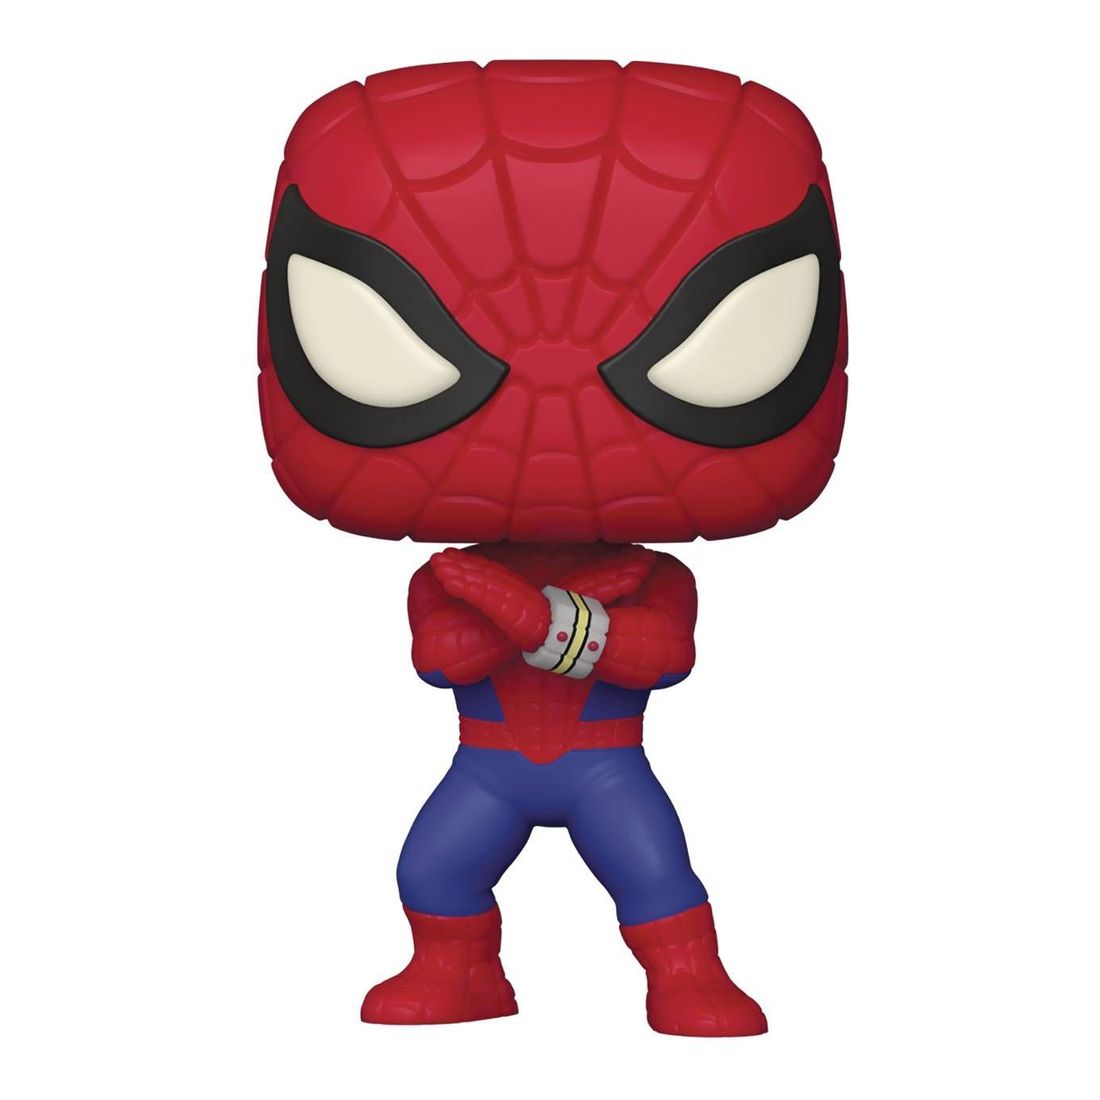 Funko Pop Marvel Spider-Man Jtv Vinyl Figure (With Glows In The Dark Chase*)